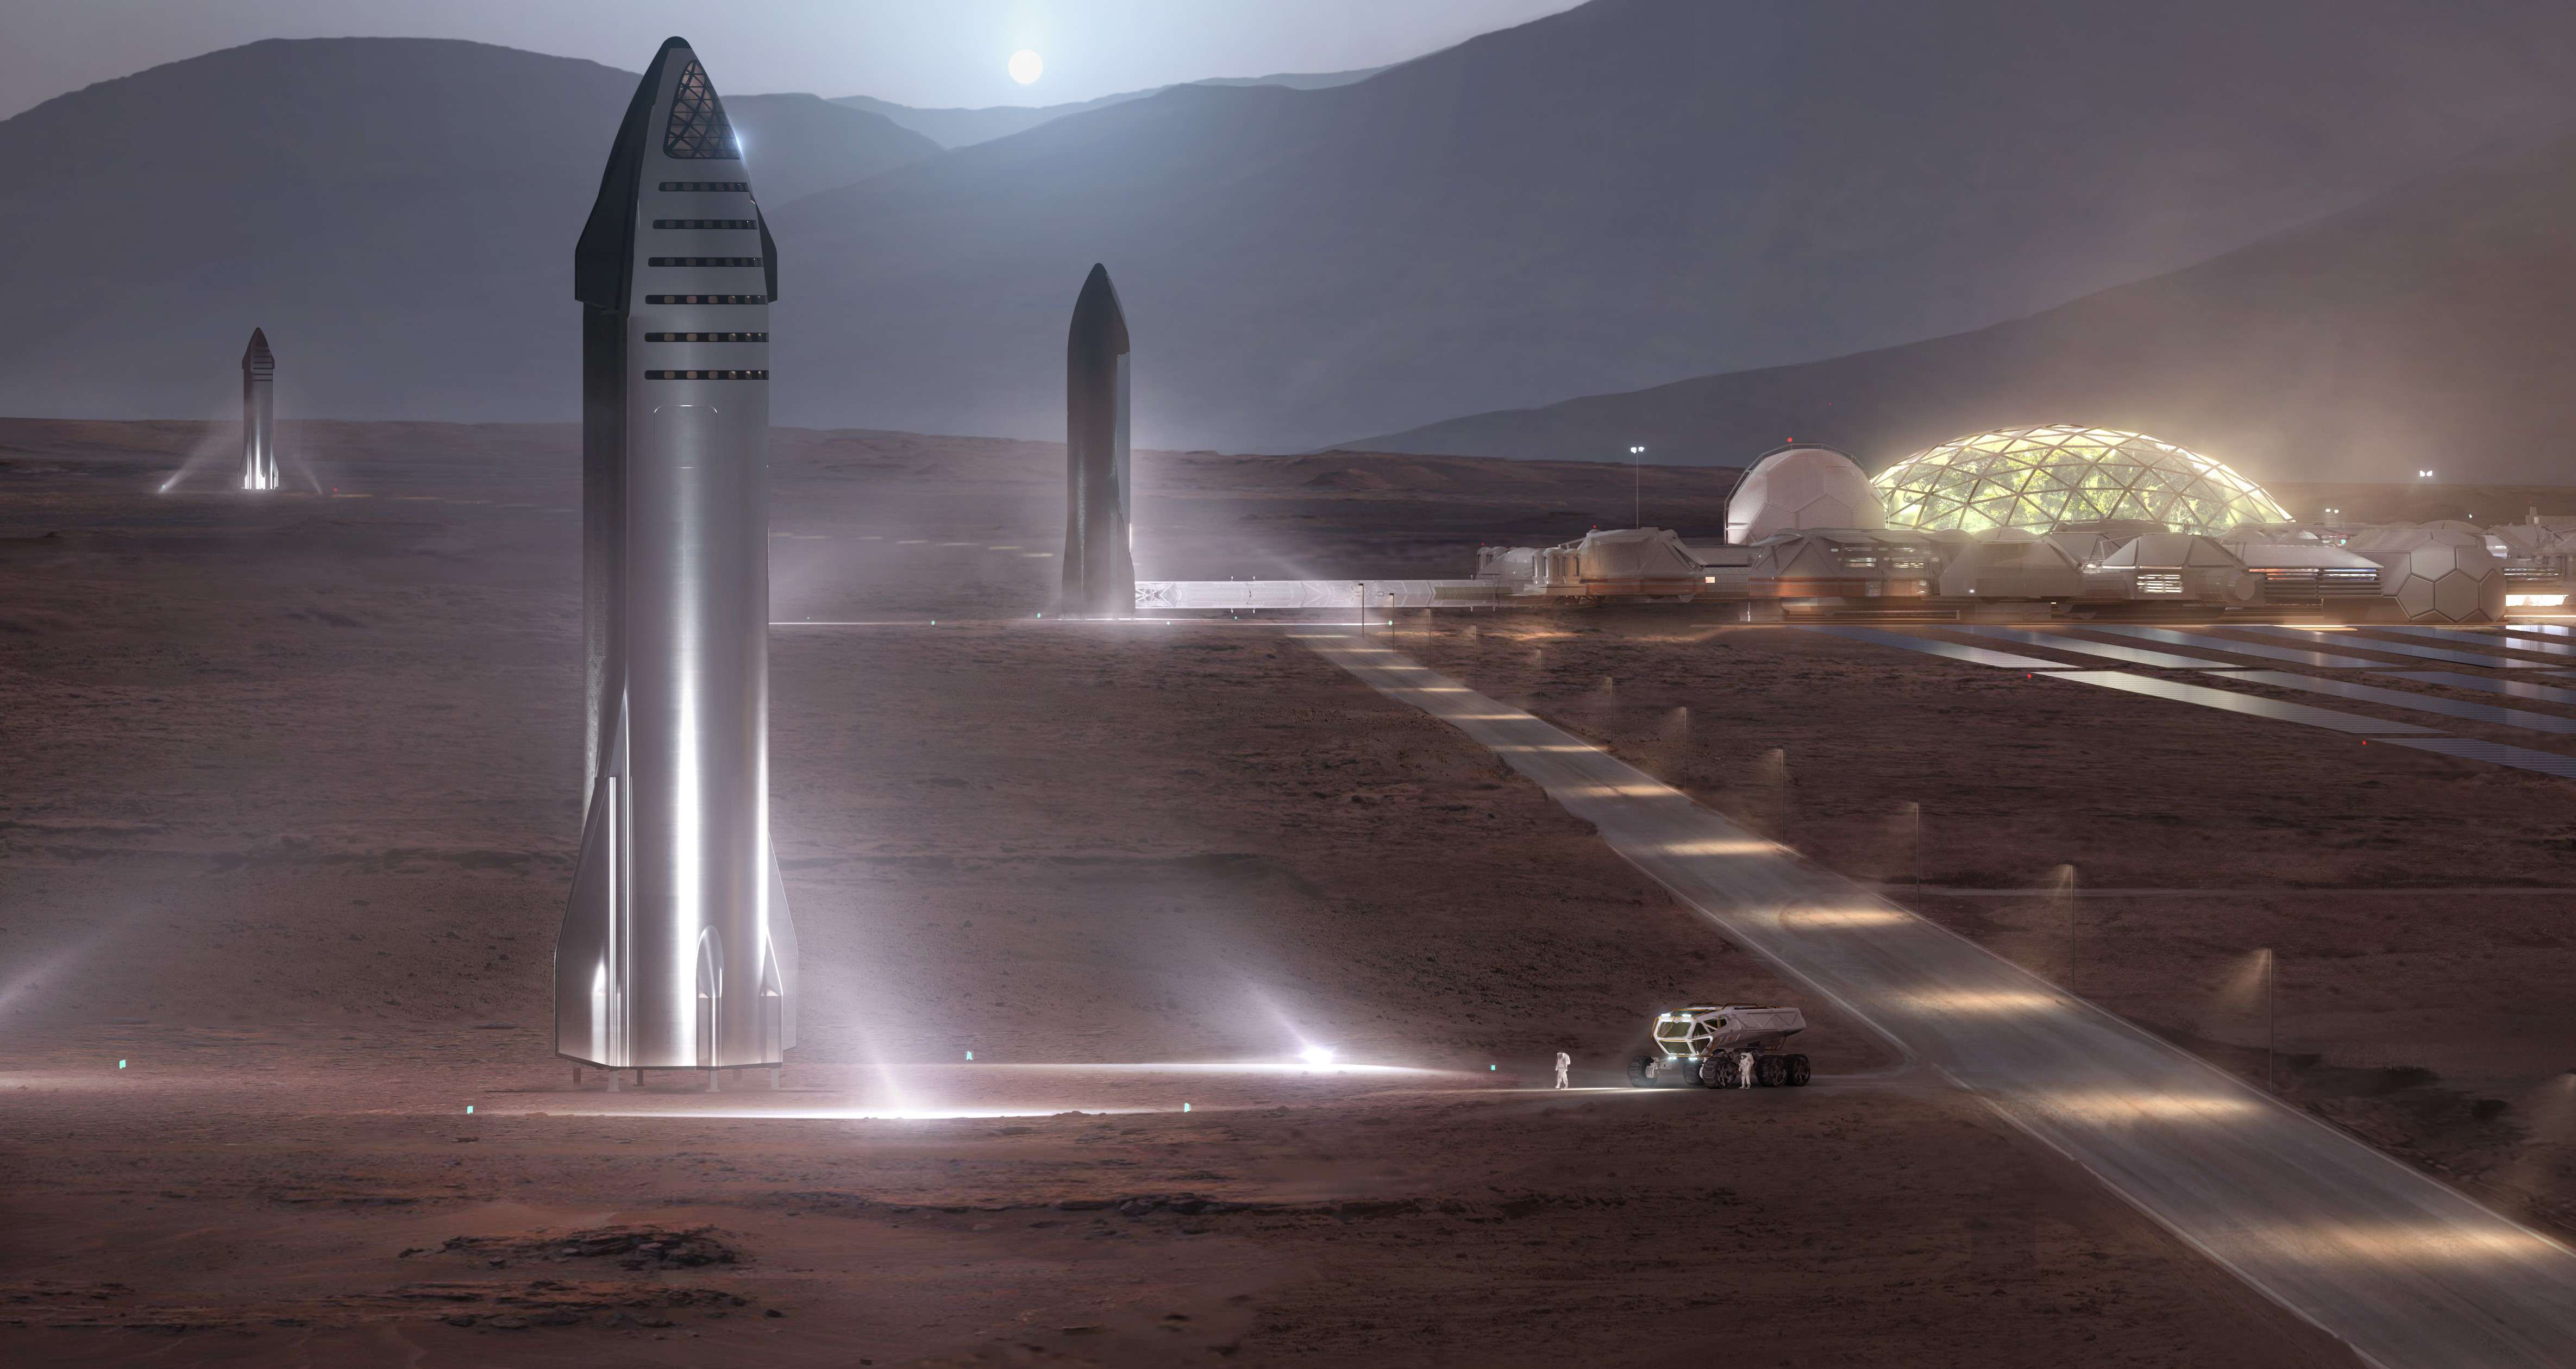 Довгострокова мета Ілона Маска – заснувати людське поселення на Марсі